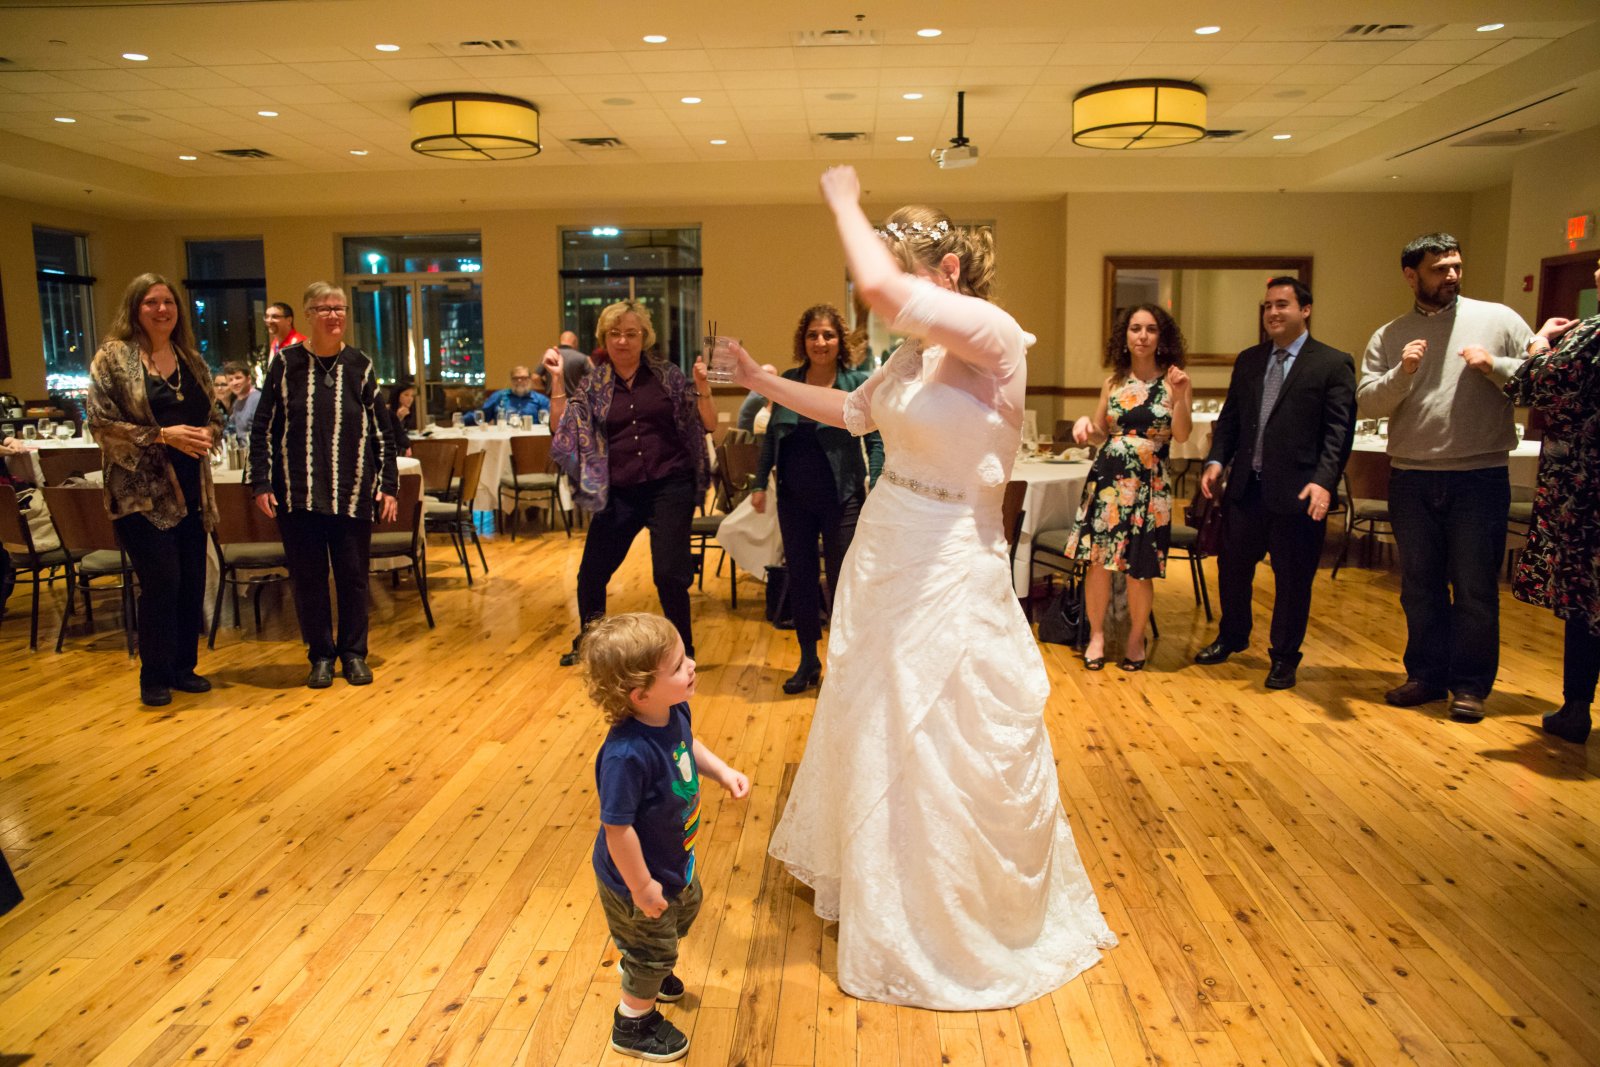 Dancing at my wedding 